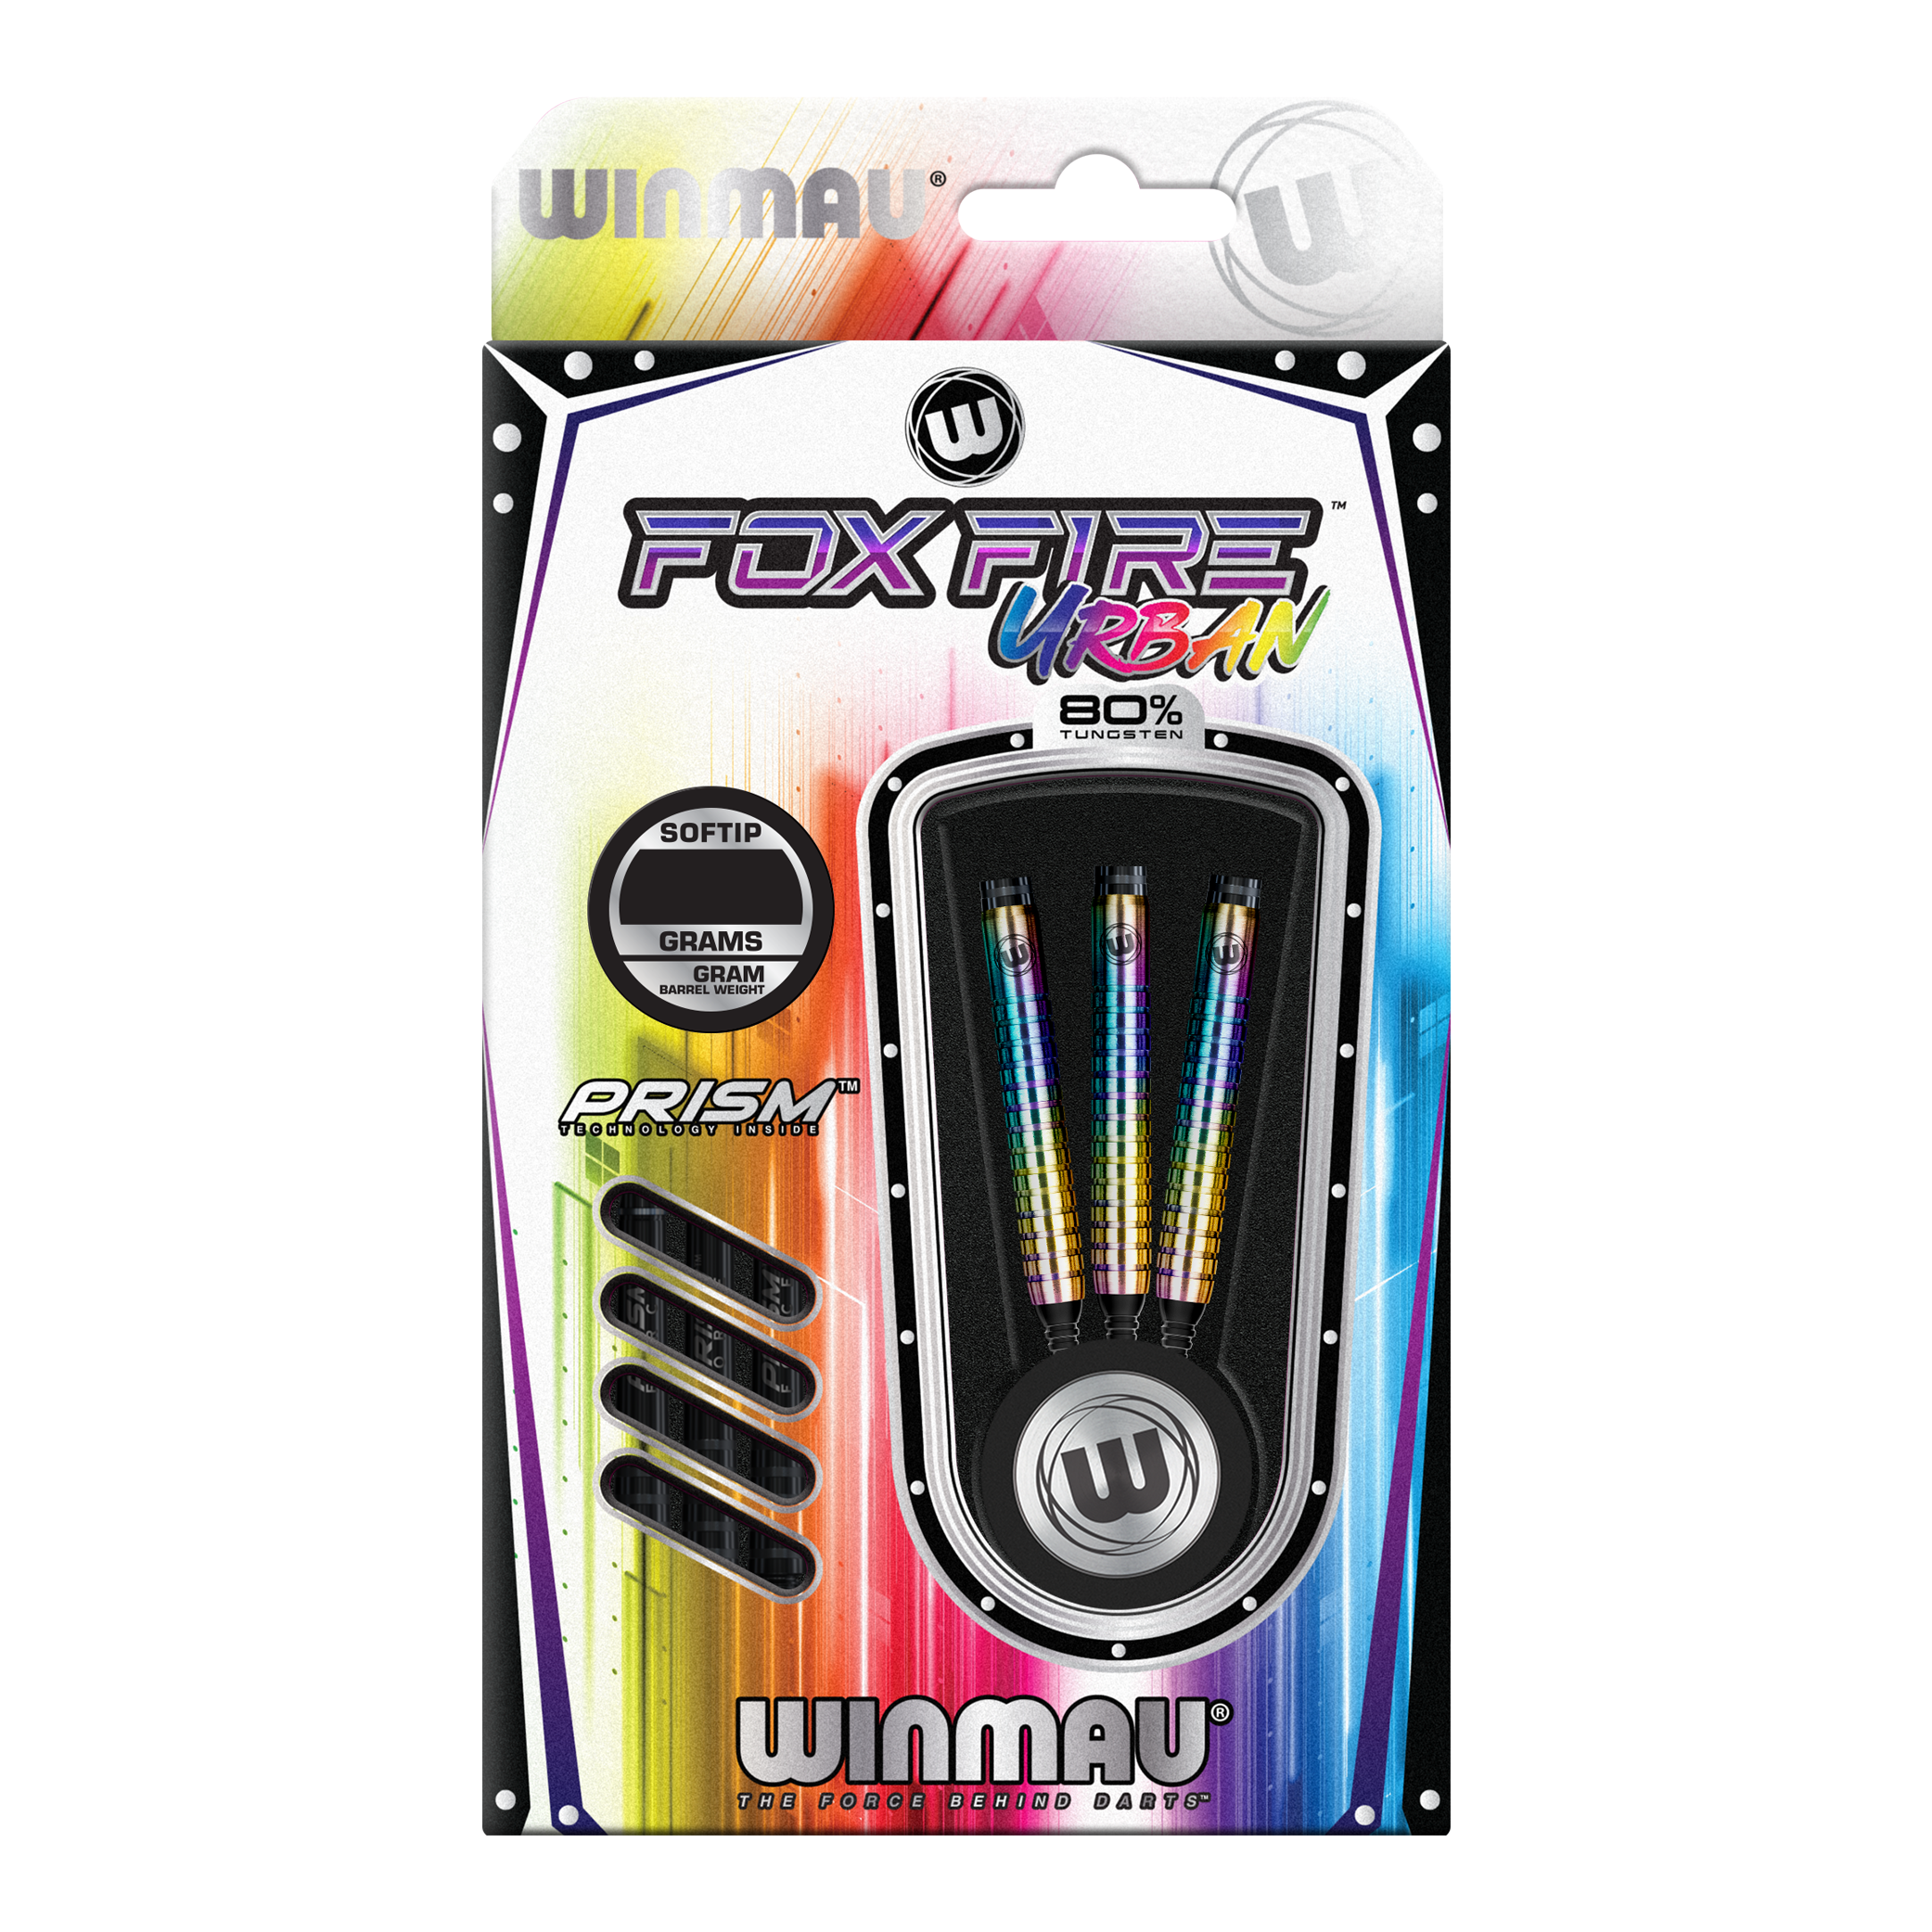 Winmau Foxfire Urban Soft Darts - 20g